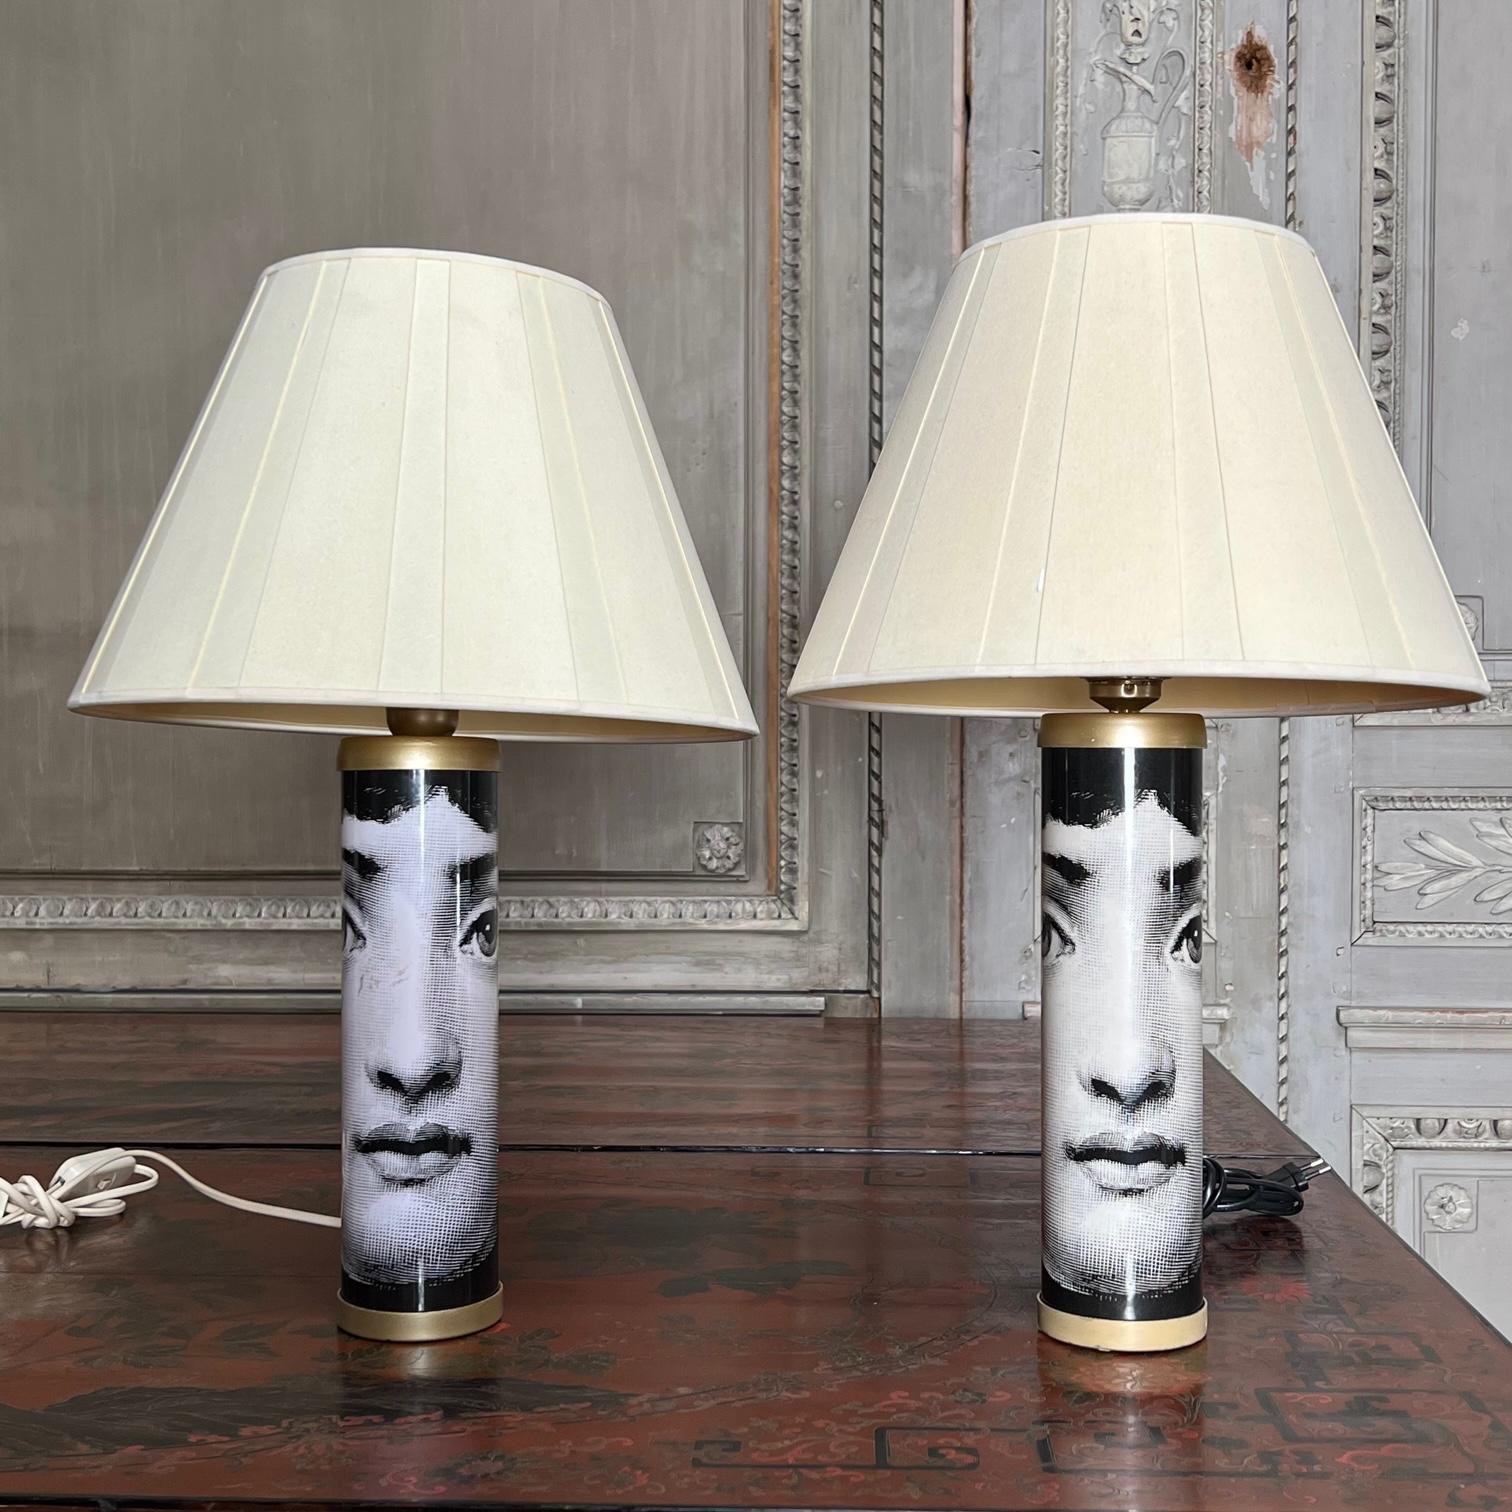 Ein Paar Tischlampen, entworfen von Pierro Fornasetti, mit dem Bild der berühmten Opernsängerin Lina Cavalieri, das um den Sockel herum bedruckt ist. Etikett von Fornasetti auf dem Sockel. Diese Lampen müssen verdrahtet werden, sie hat derzeit eine